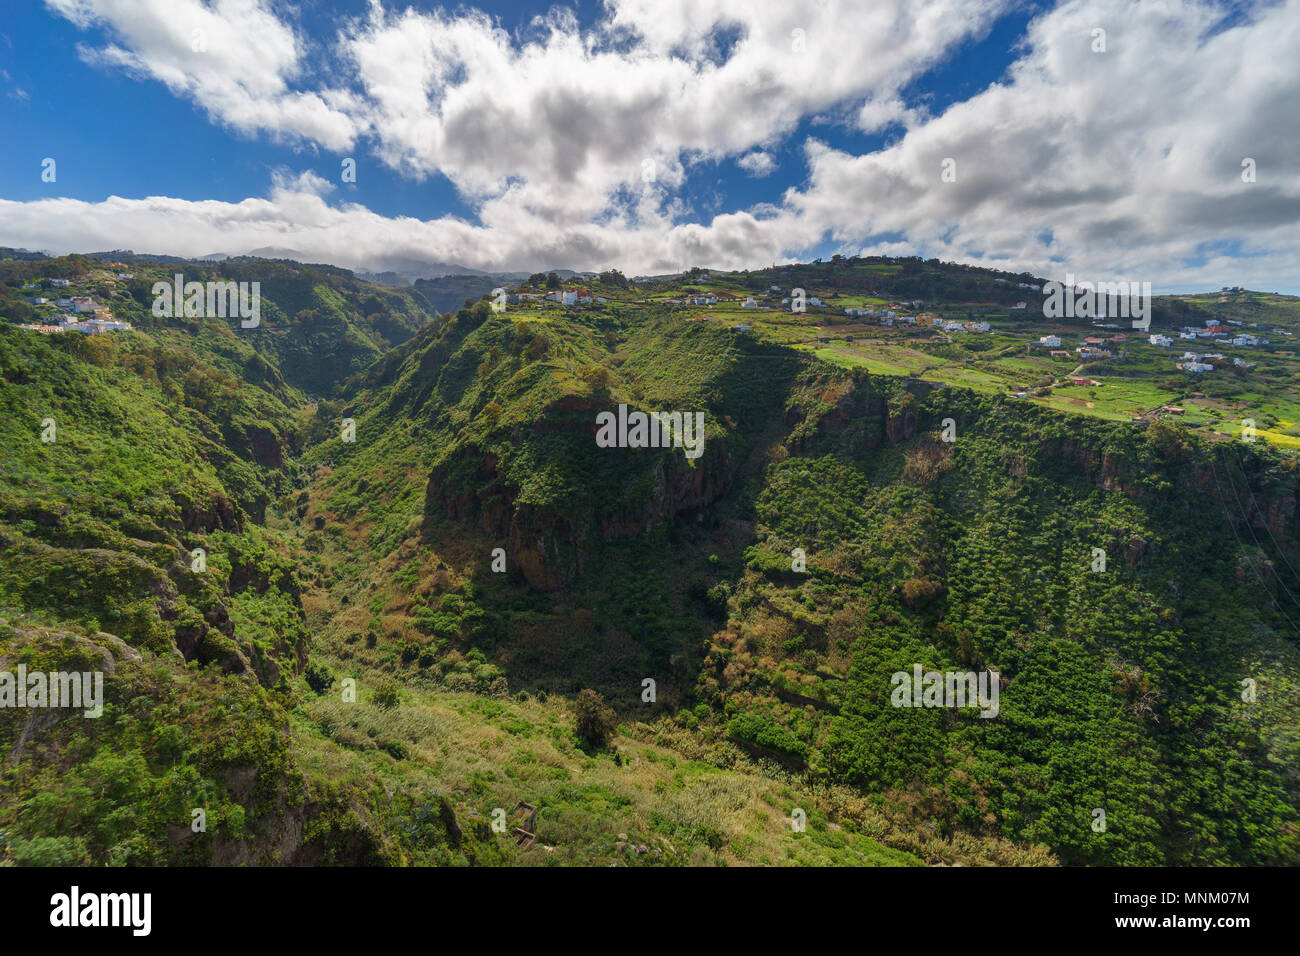 New Scenic 5 posti villaggio sulle pendici della bella valle, Gran Canaria Isole Canarie Spagna Foto Stock